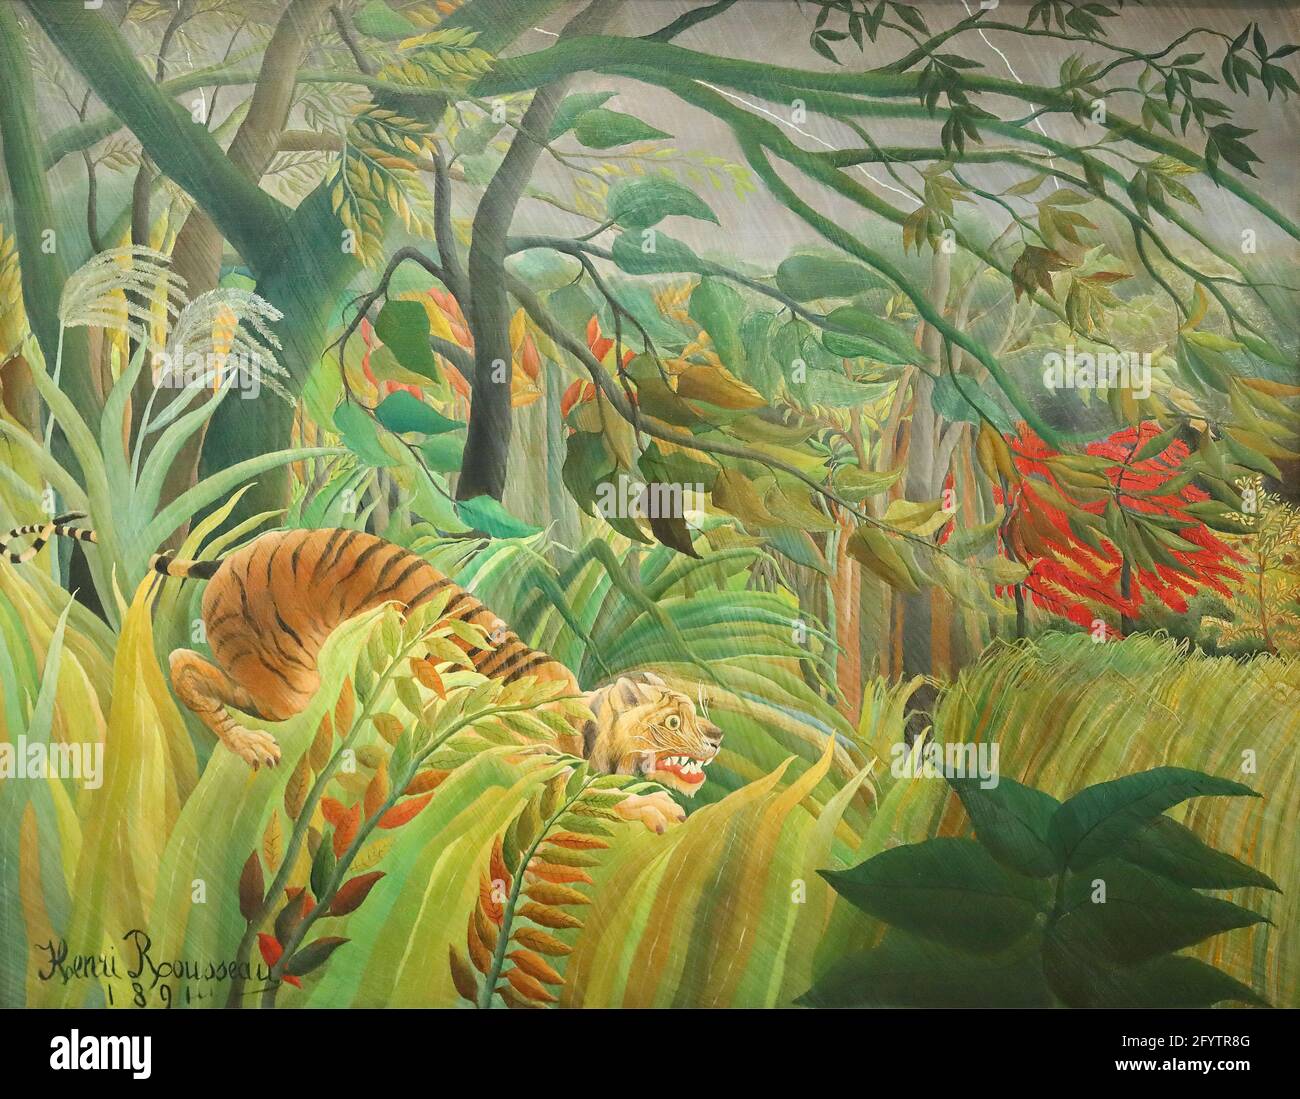 Tigre dans une tempête tropicale (surpris!) Par le peintre impressionniste français Henri Rousseau à la National Gallery, Londres, Royaume-Uni Banque D'Images